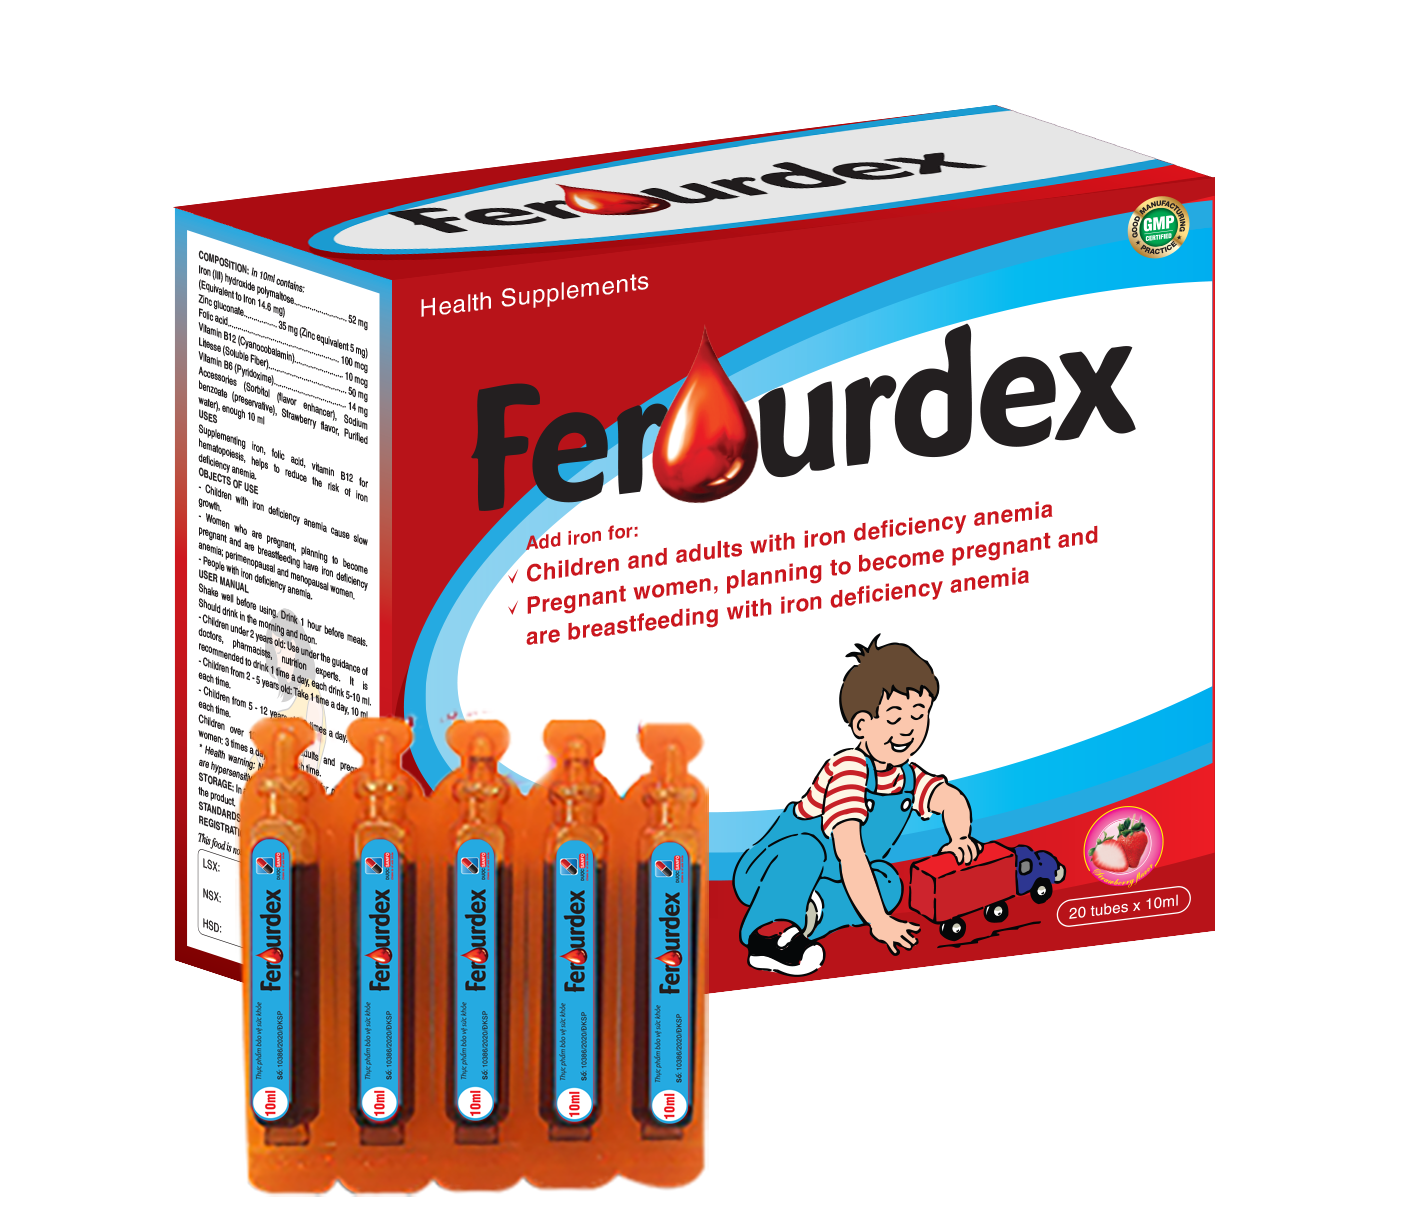 Ferourdex 20 ống x 10ml - Giúp phòng chống thiếu máu, kích thích ăn ngon